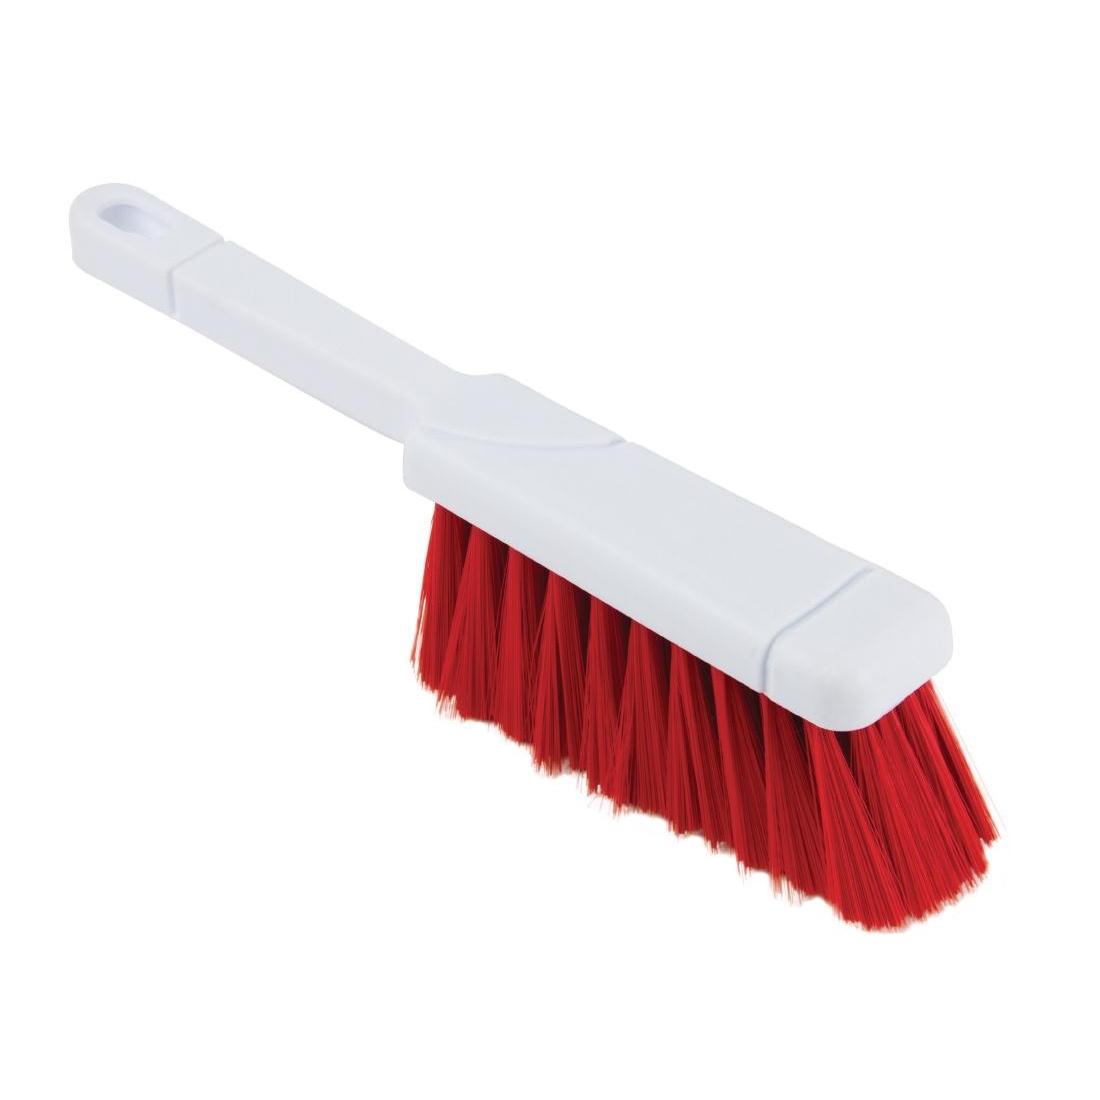 Jantex Dustpan Brush Red - L753 - 1